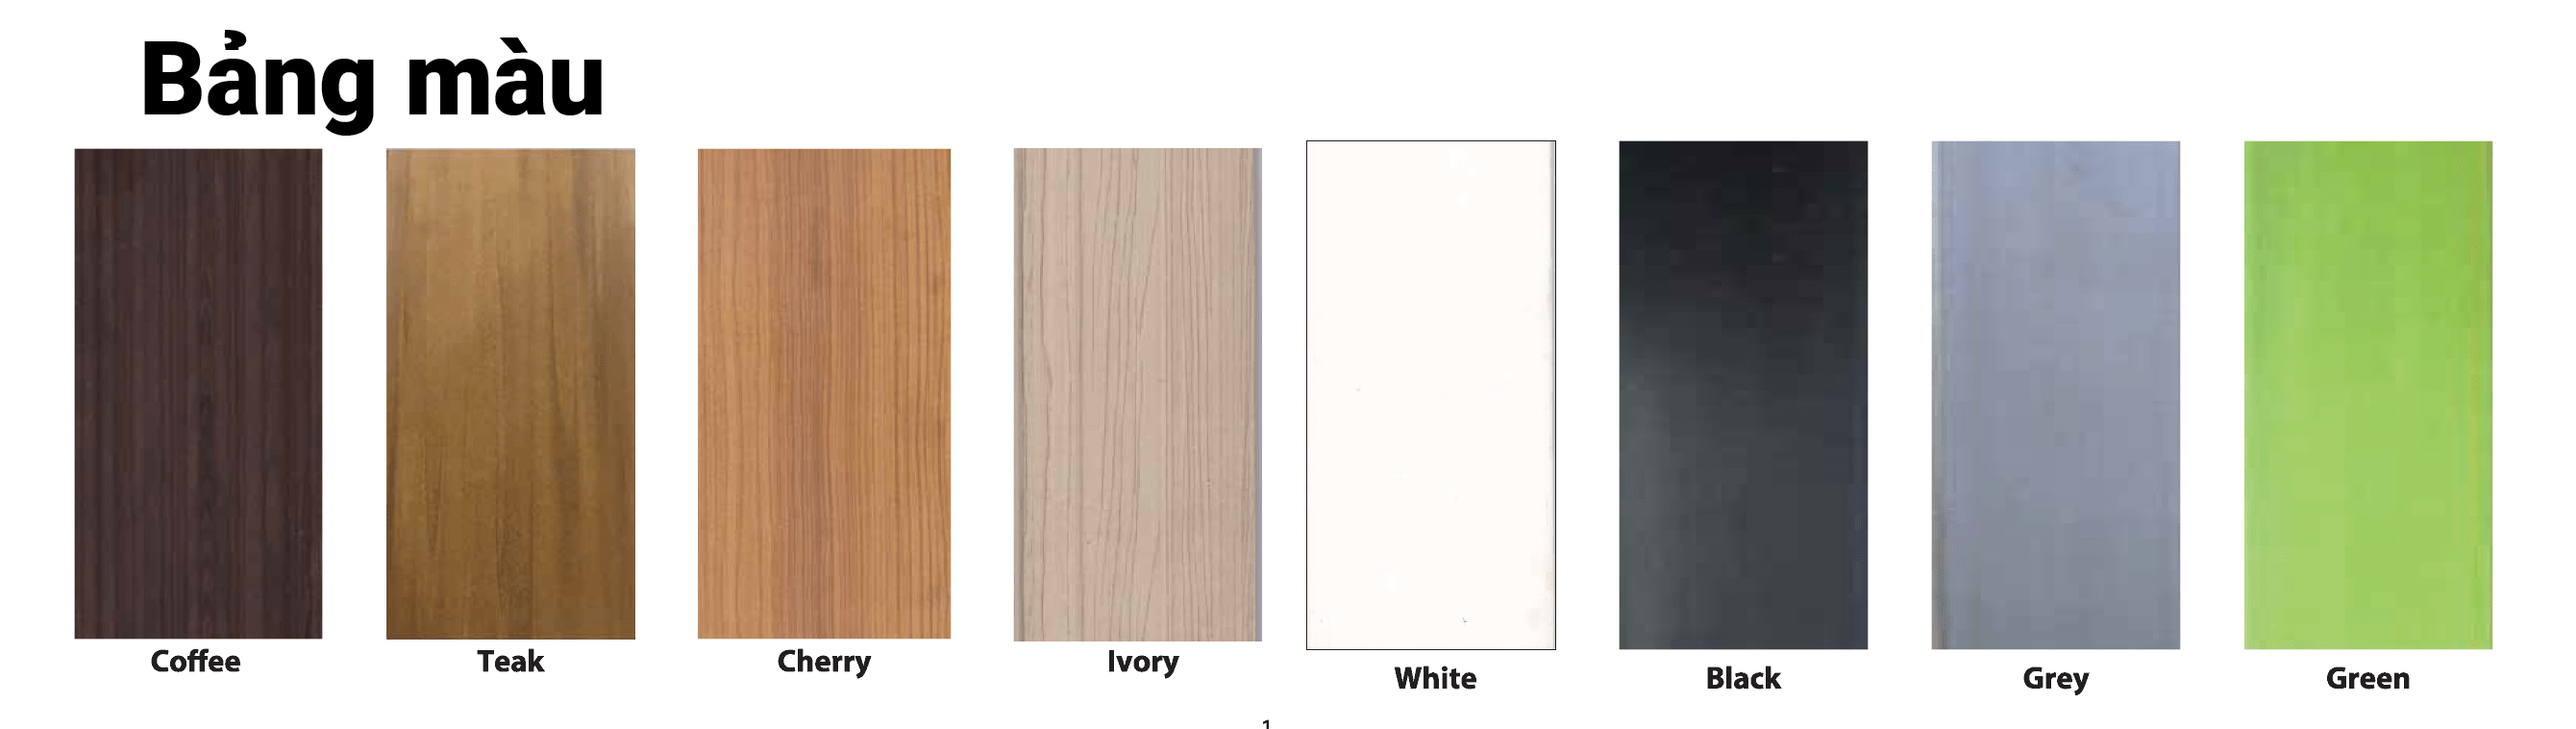 Màu gỗ: Màu nâu, Màu xám đậm, màu gỗ, màu ngói, màu trắng xám.